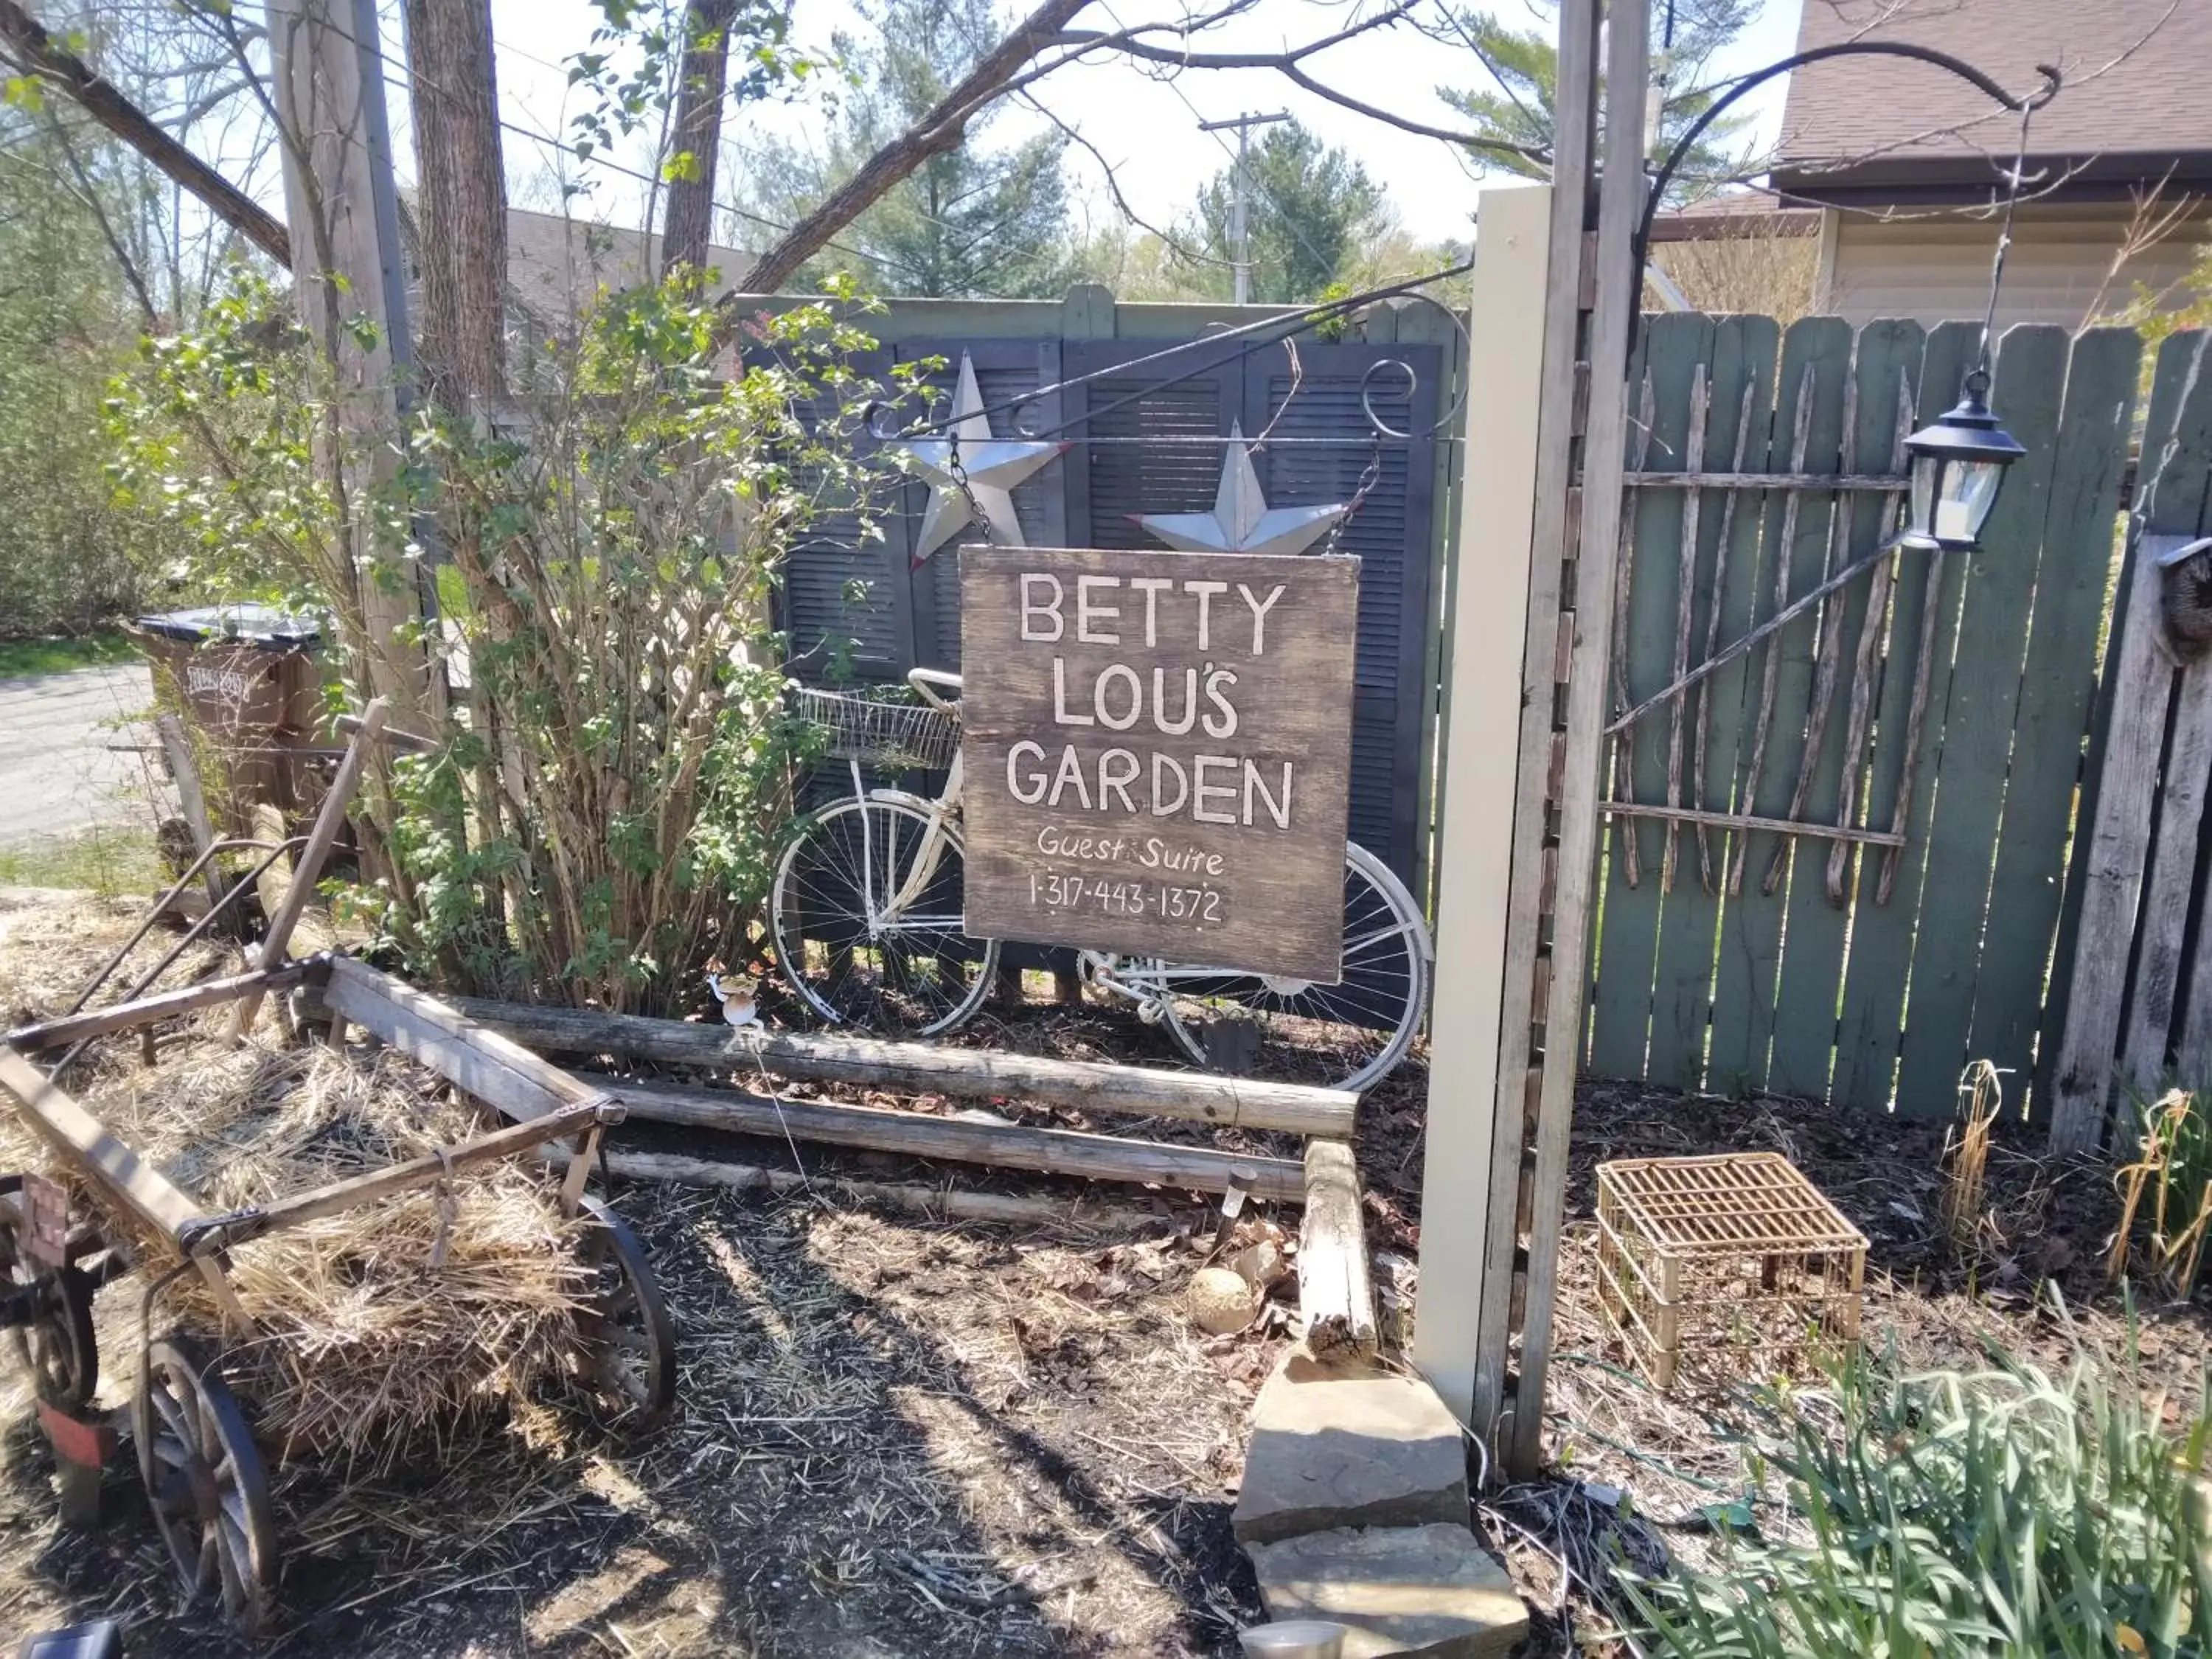 Betty Lous Garden